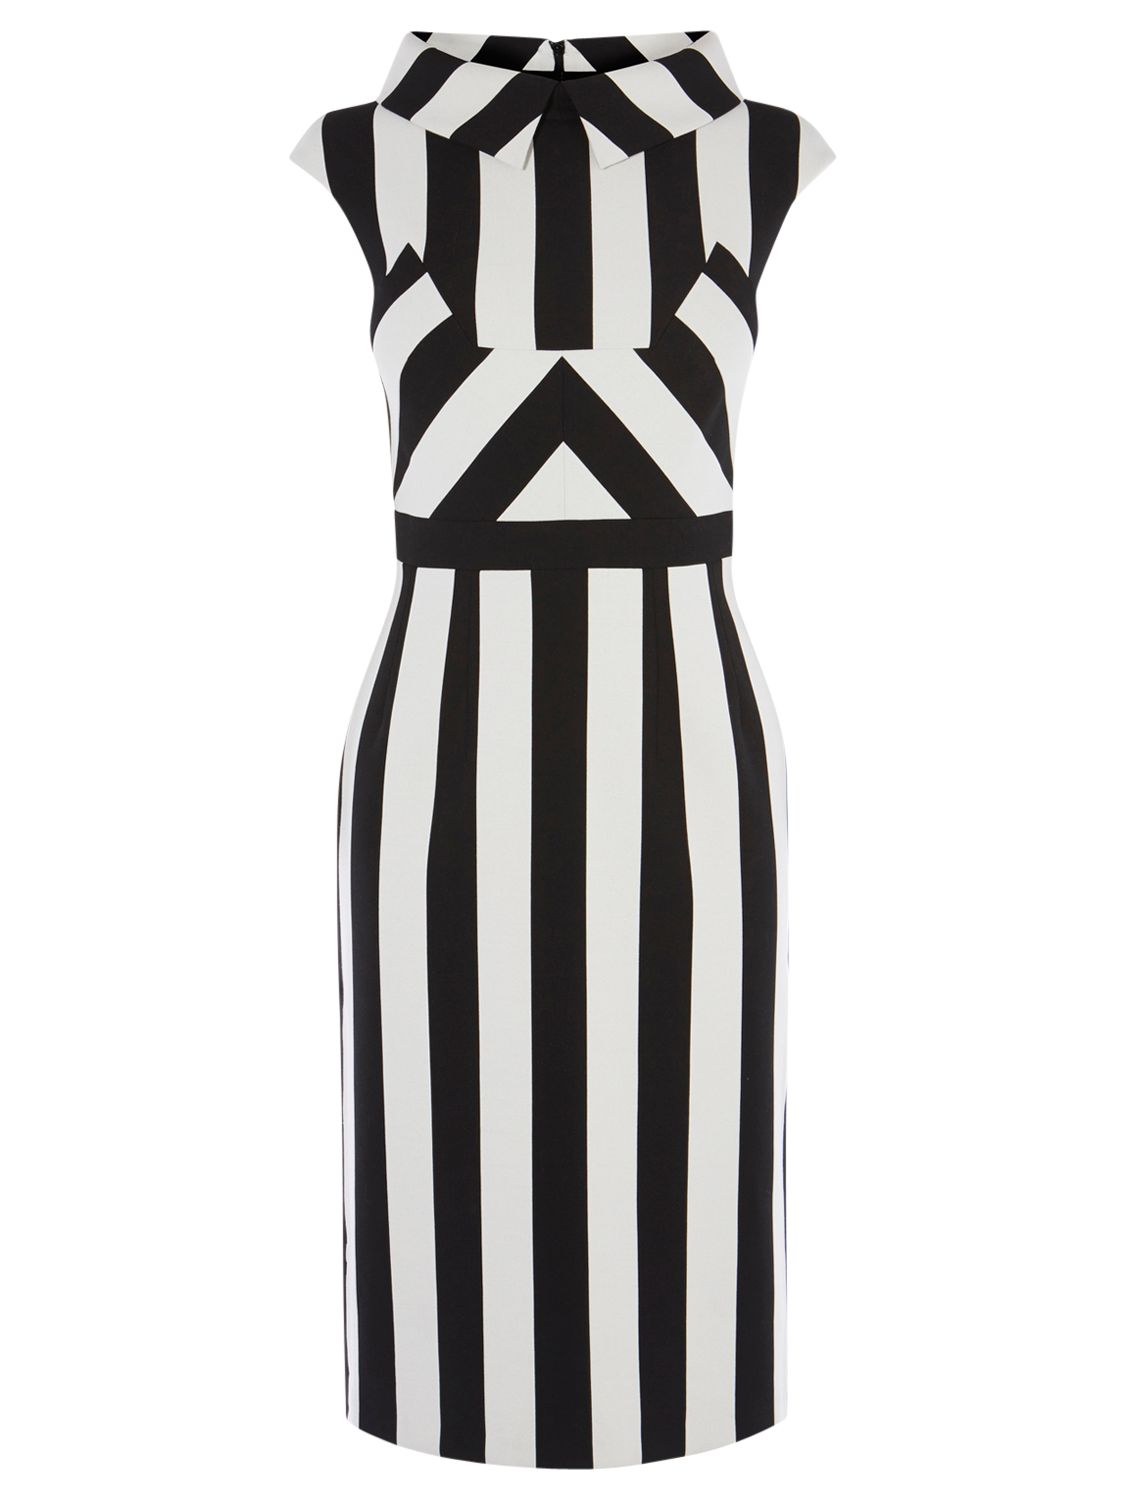 Karen Millen Multi Stripe Dress, Black/White